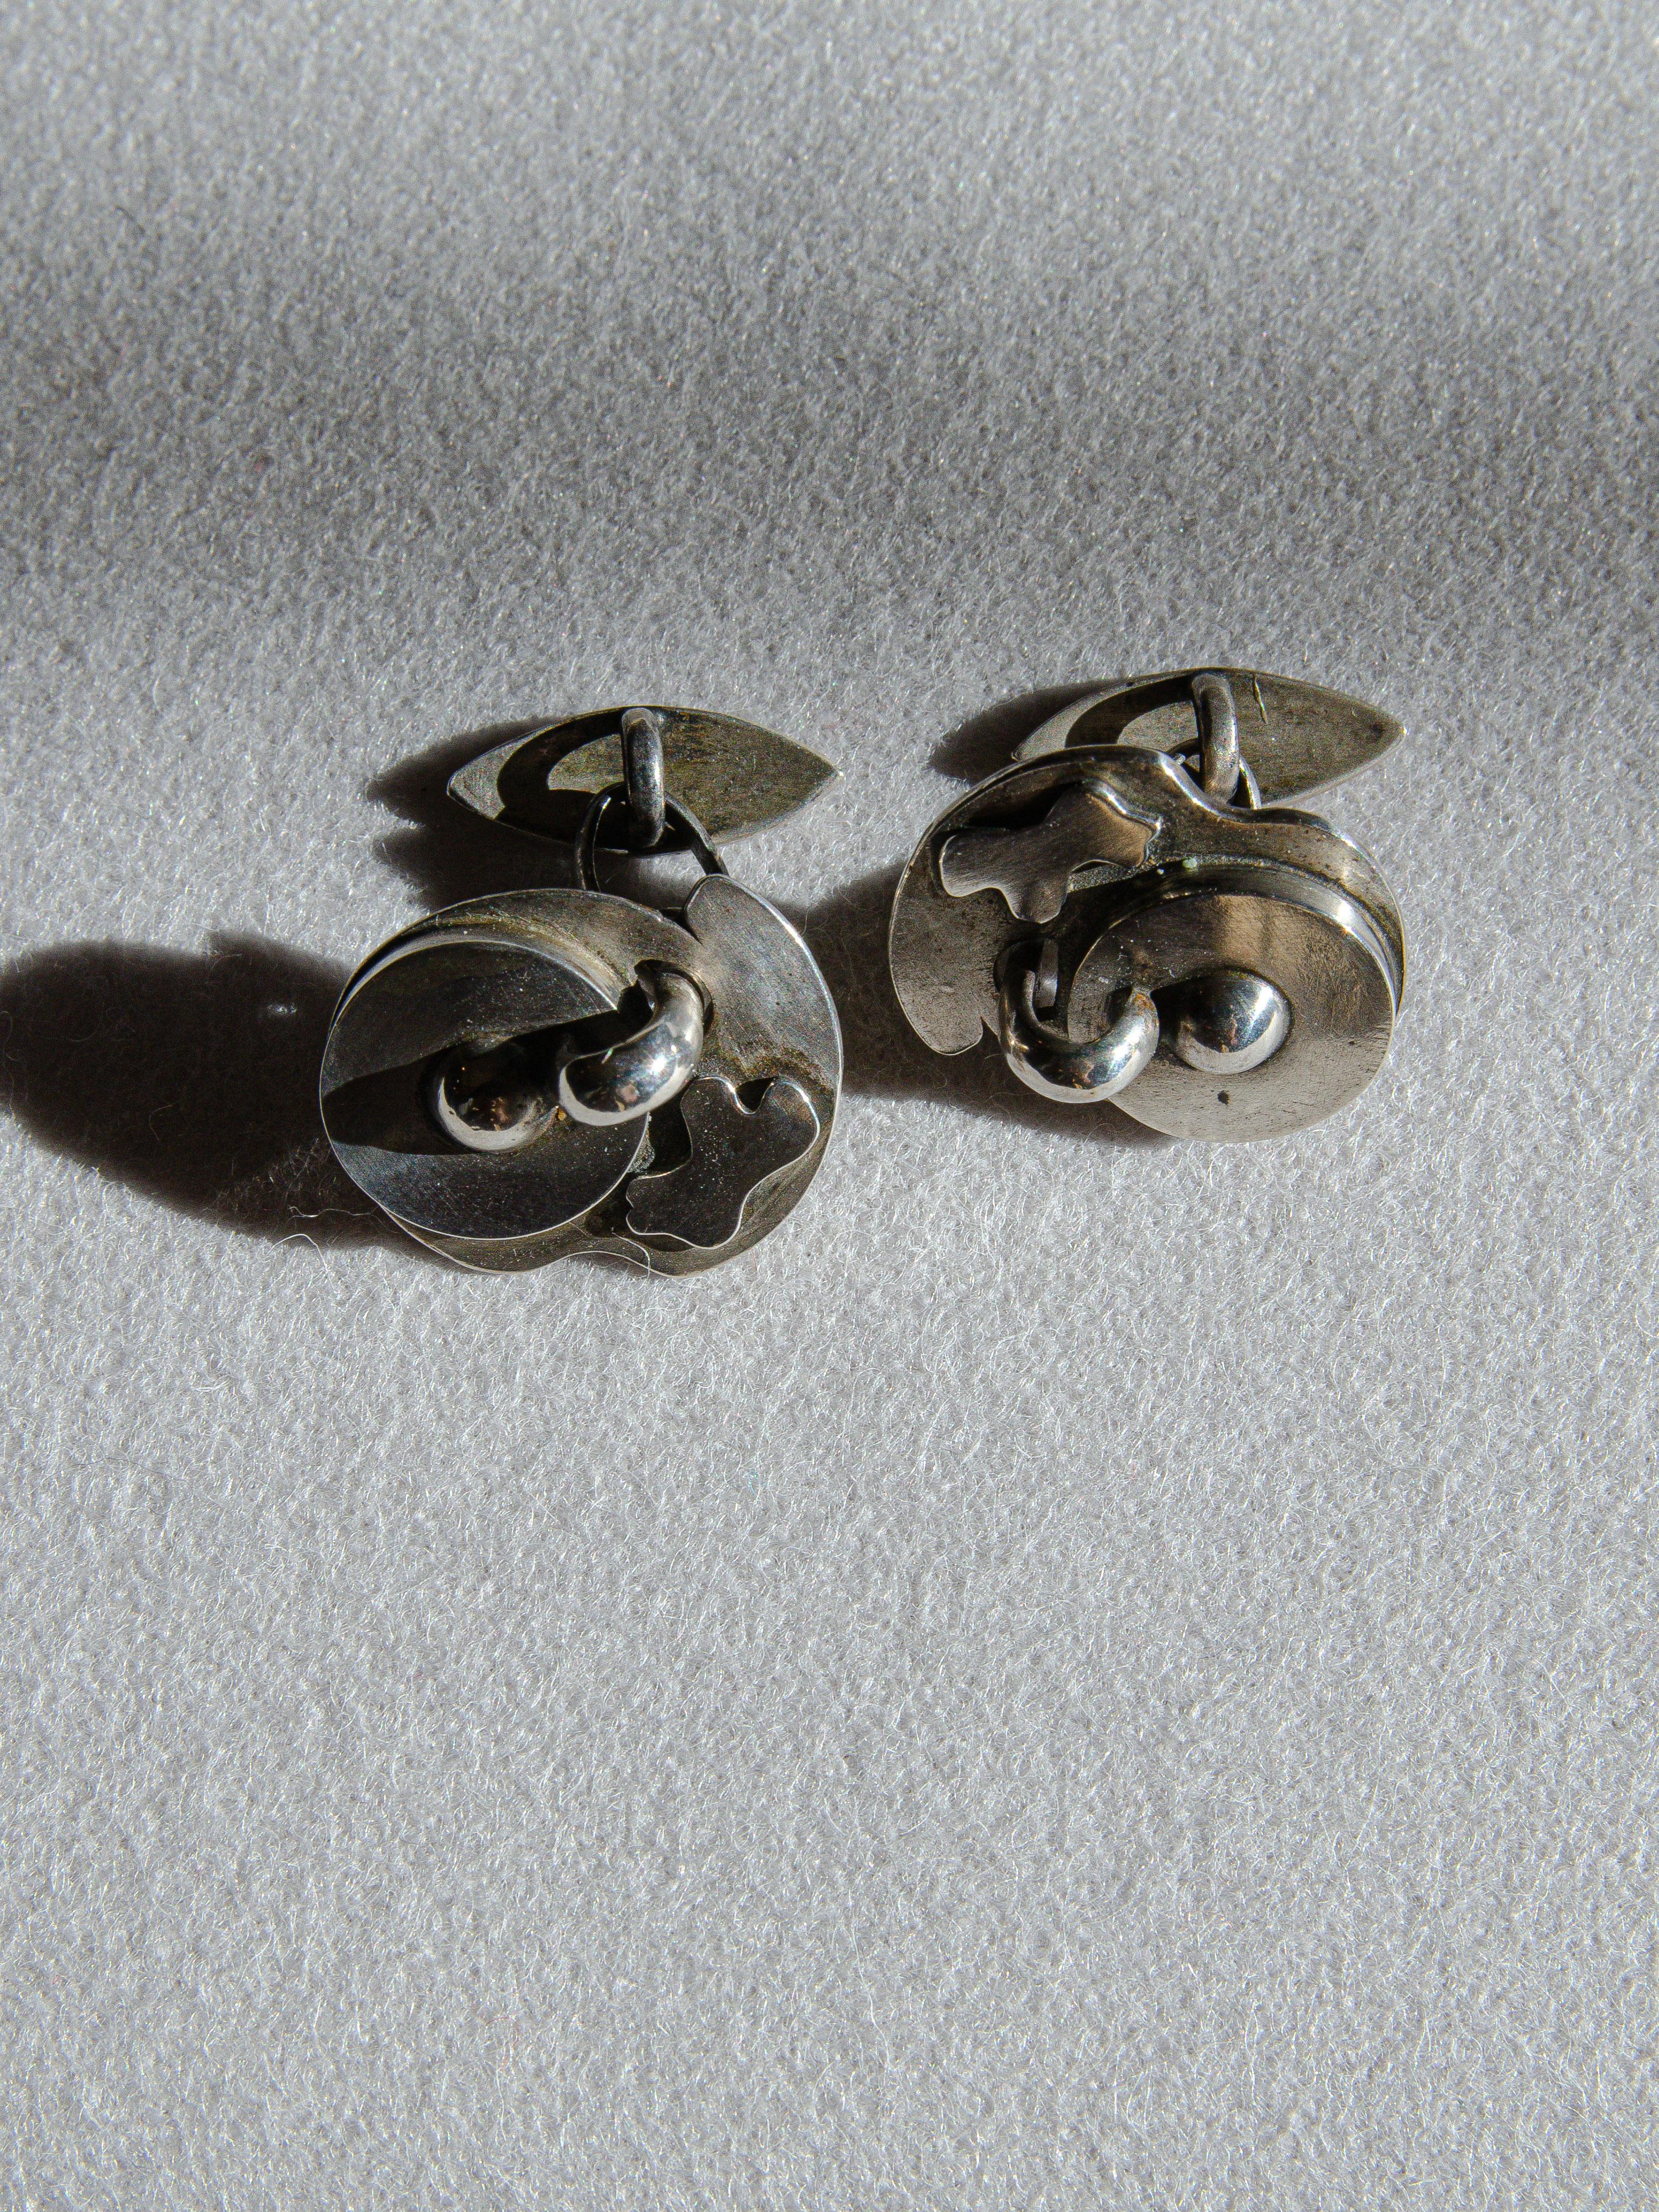 Une fantastique paire de boutons de manchette en argent sterling conçue par  le célèbre bijoutier moderniste de Greenwich Village, Sam Kramer. Les dessins biomorphiques sont emblématiques de son style surréaliste. Il était connu pour incorporer des